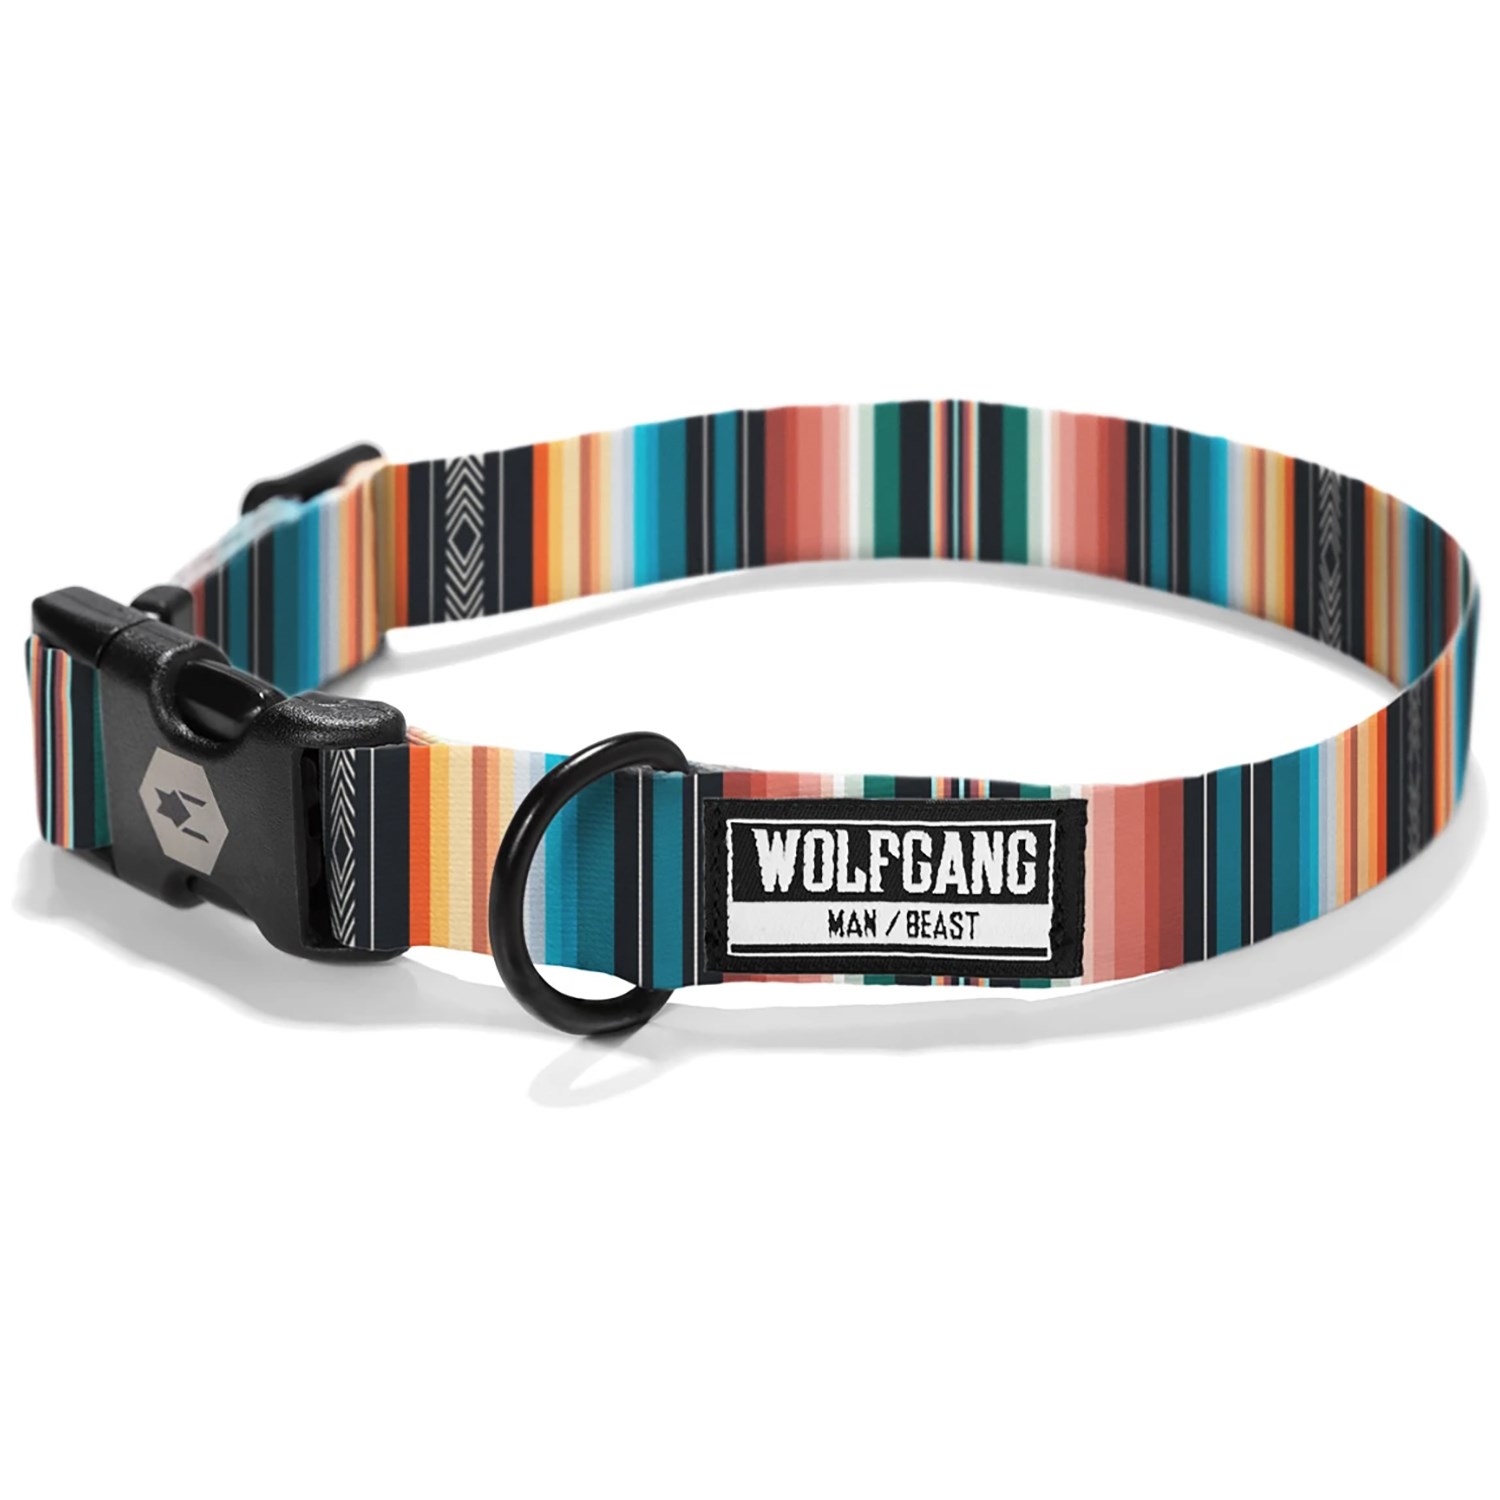 Wolfgang Man & Beast Premium USA Webbing Dog Collar 